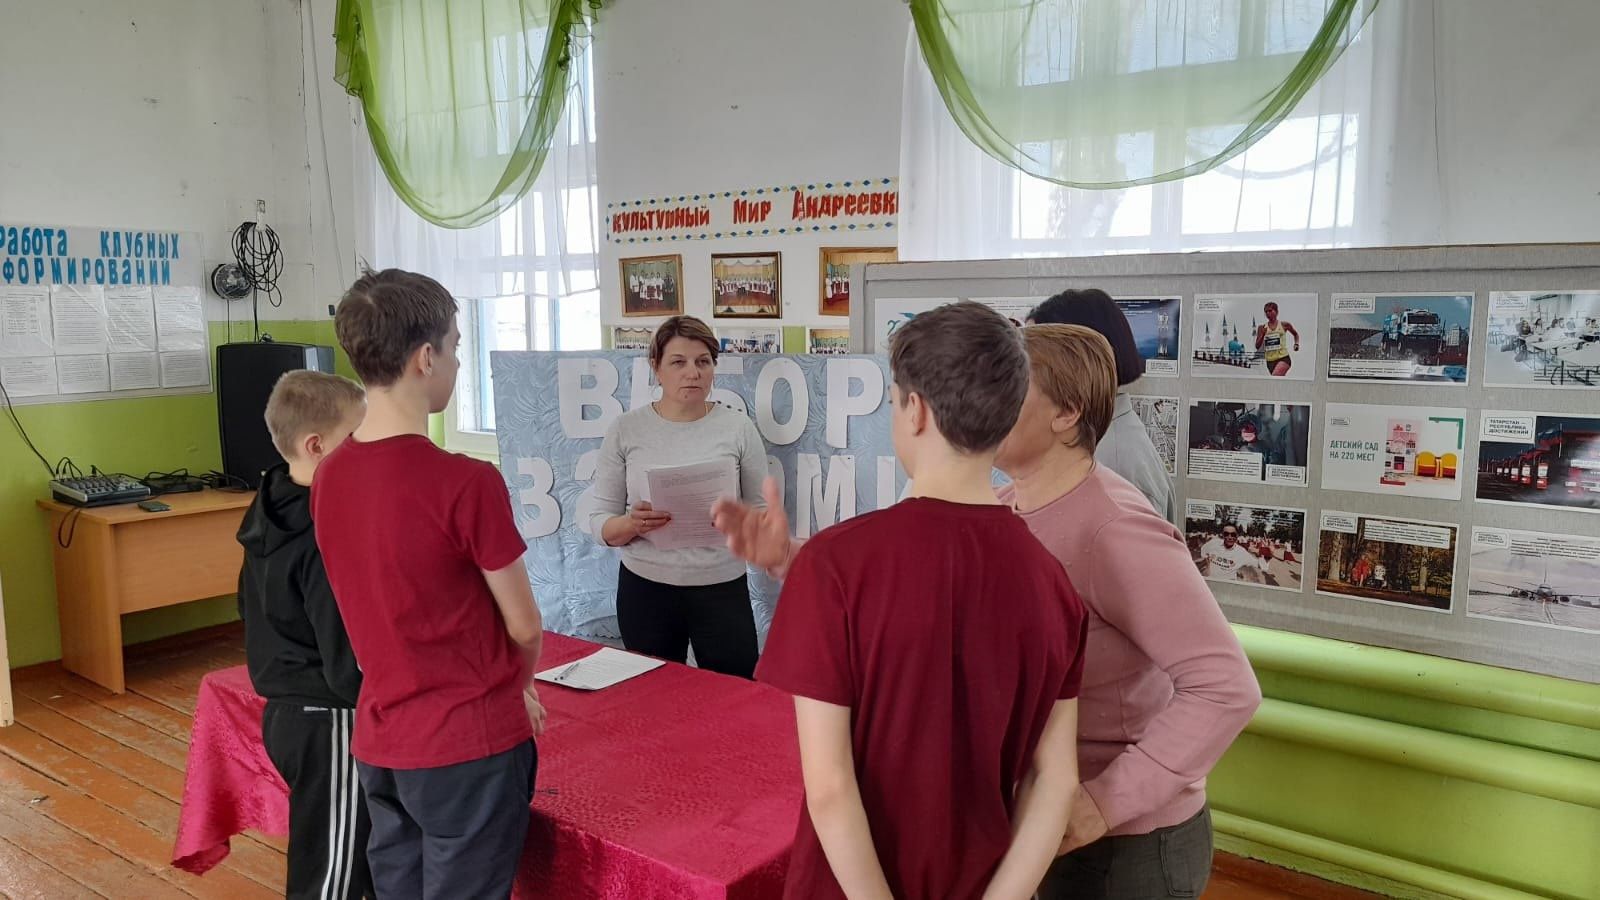 В Андреевке в дни выборов организовали увлекательные мероприятия для сельчан